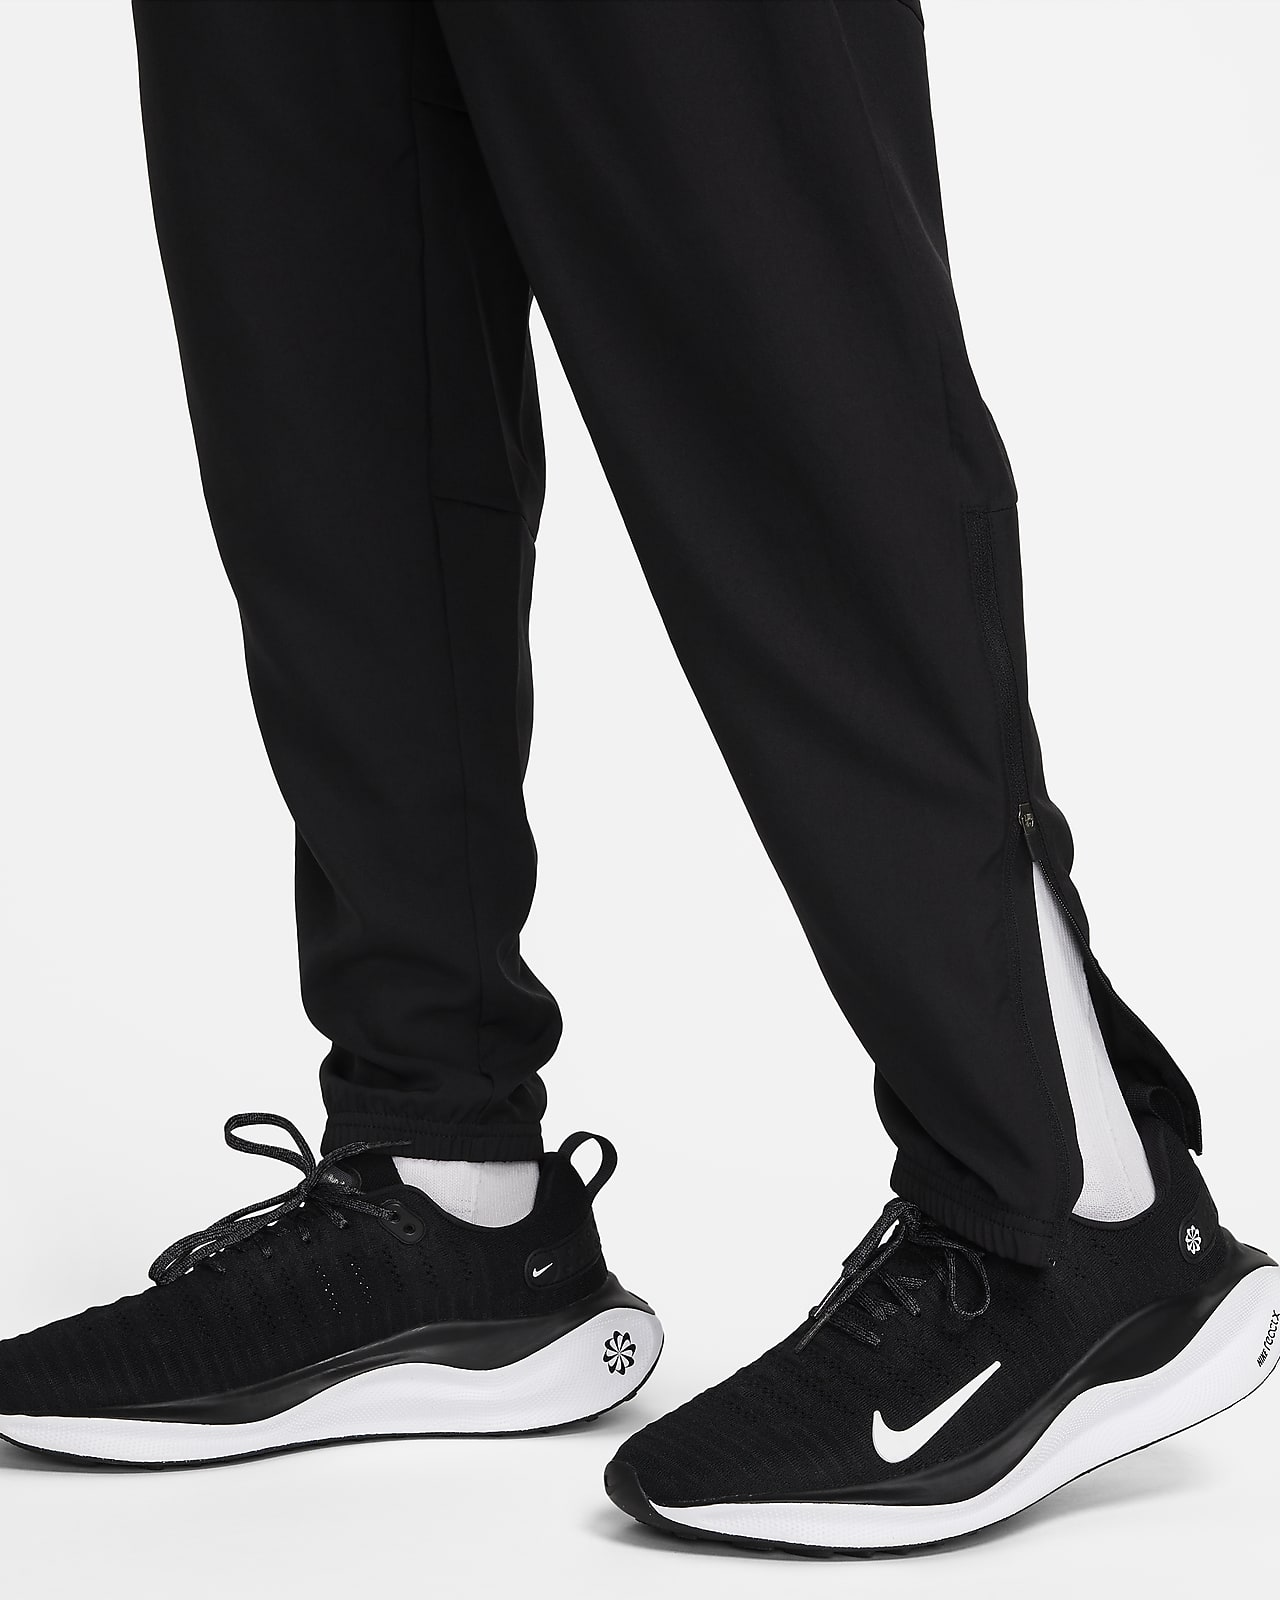 Nike Dri Fit Challenger Knit Pants Grey